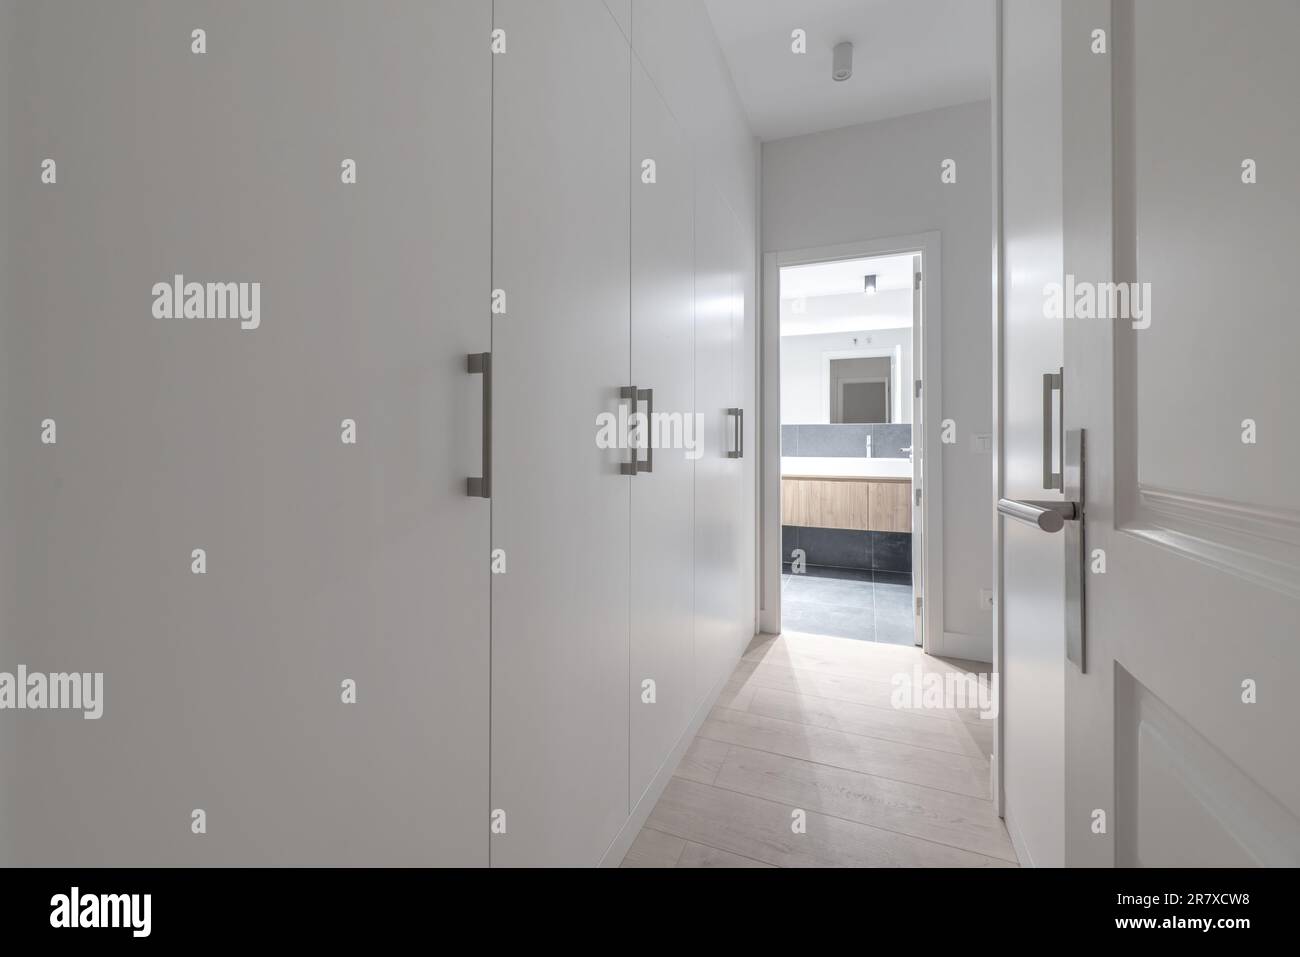 Dormitorio en el pasillo con gabinetes de madera blanca, pisos de madera y acceso a un baño en suite Foto de stock